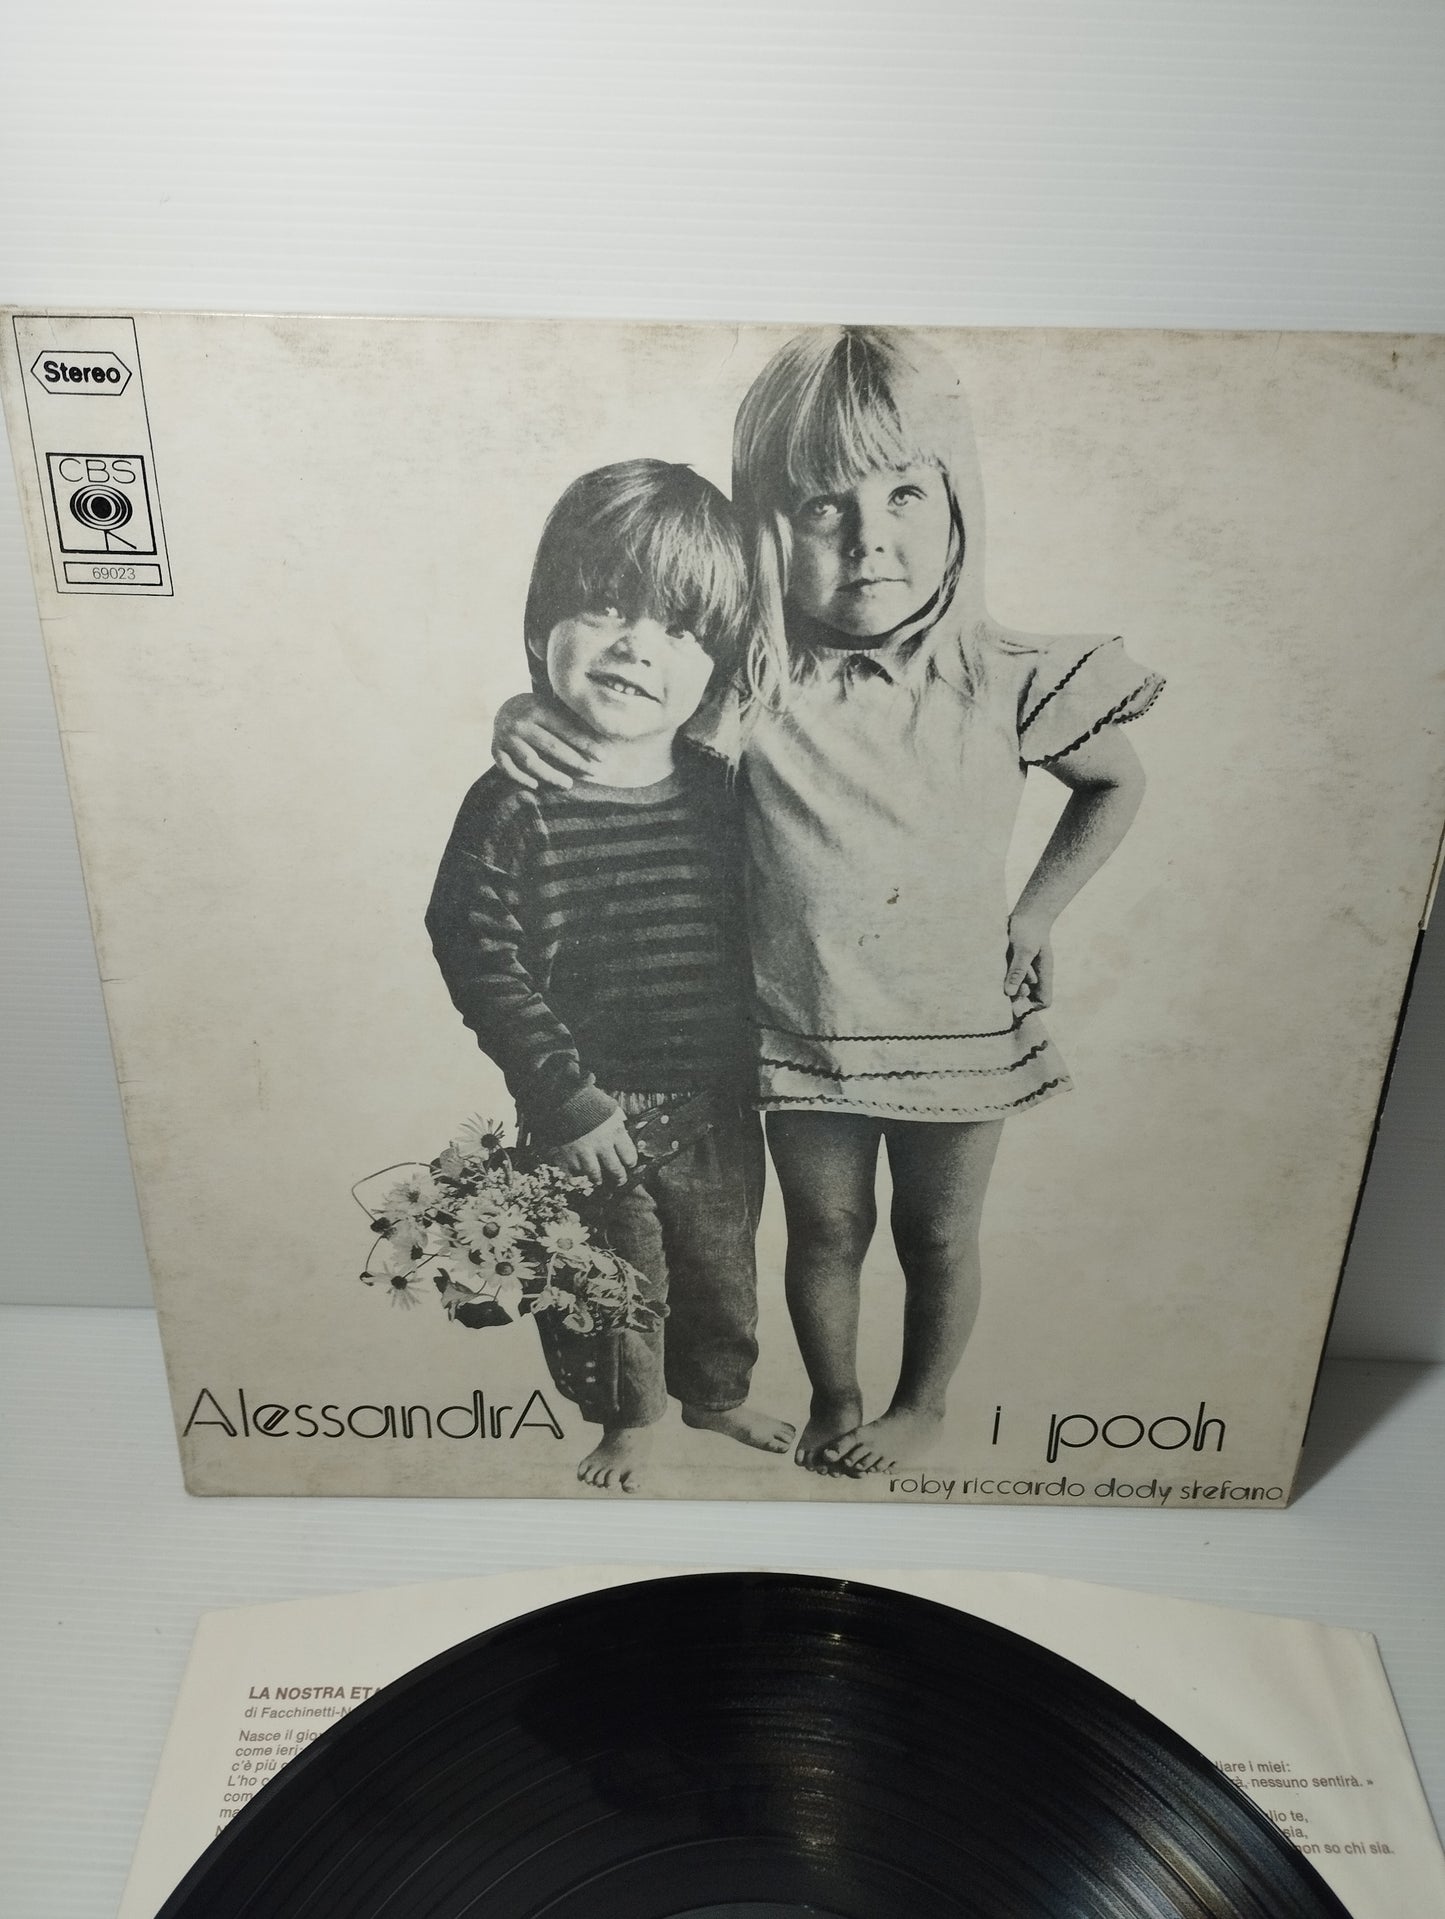 Alessandra I Pooh LP 33 giri
Edito nel 1972 da CBS cod.69023